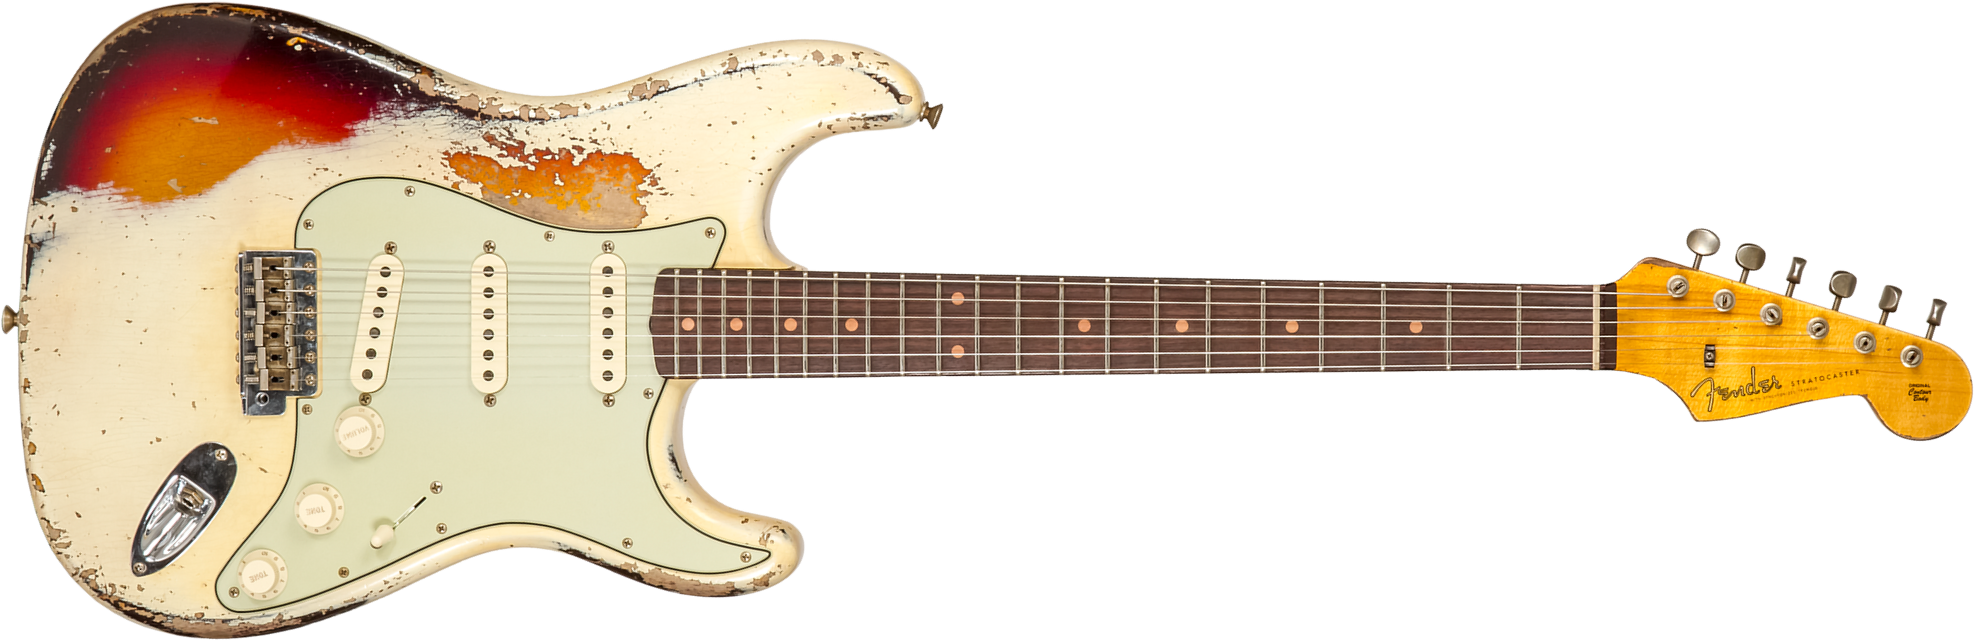 Fender Custom Shop Strat 1959 3s Trem Rw #cz576189 - Super Heavy Relic Vintage White O. 3-color Sunburs - Str shape electric guitar - Main picture